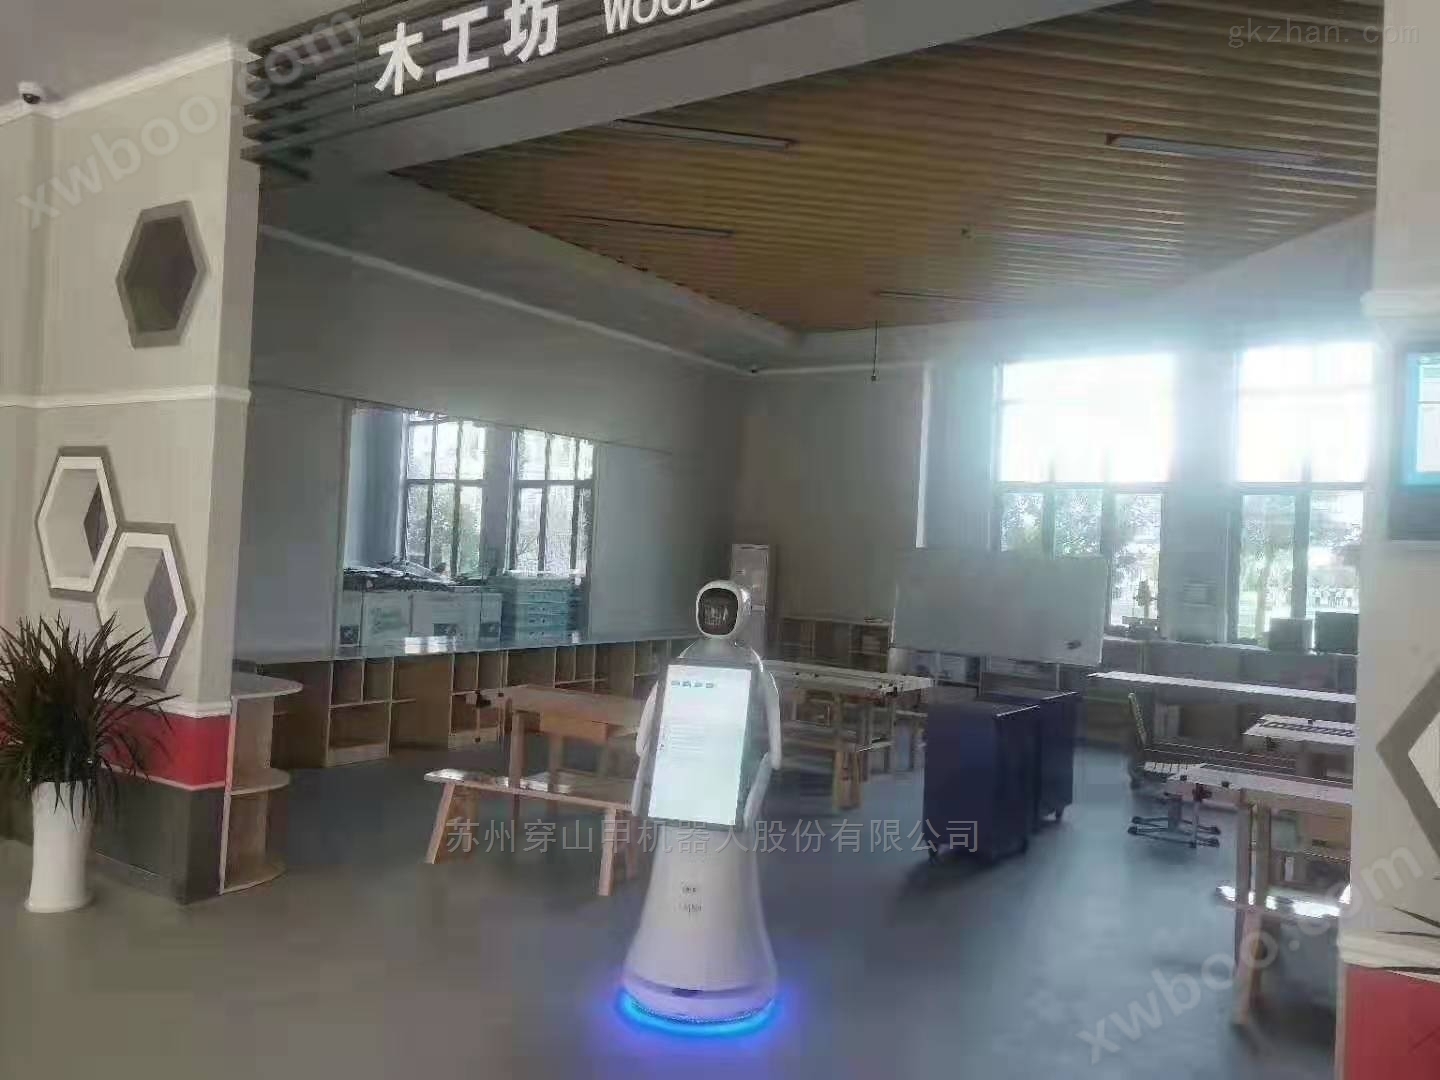 淮安清浦中学迎宾教育讲解机器人